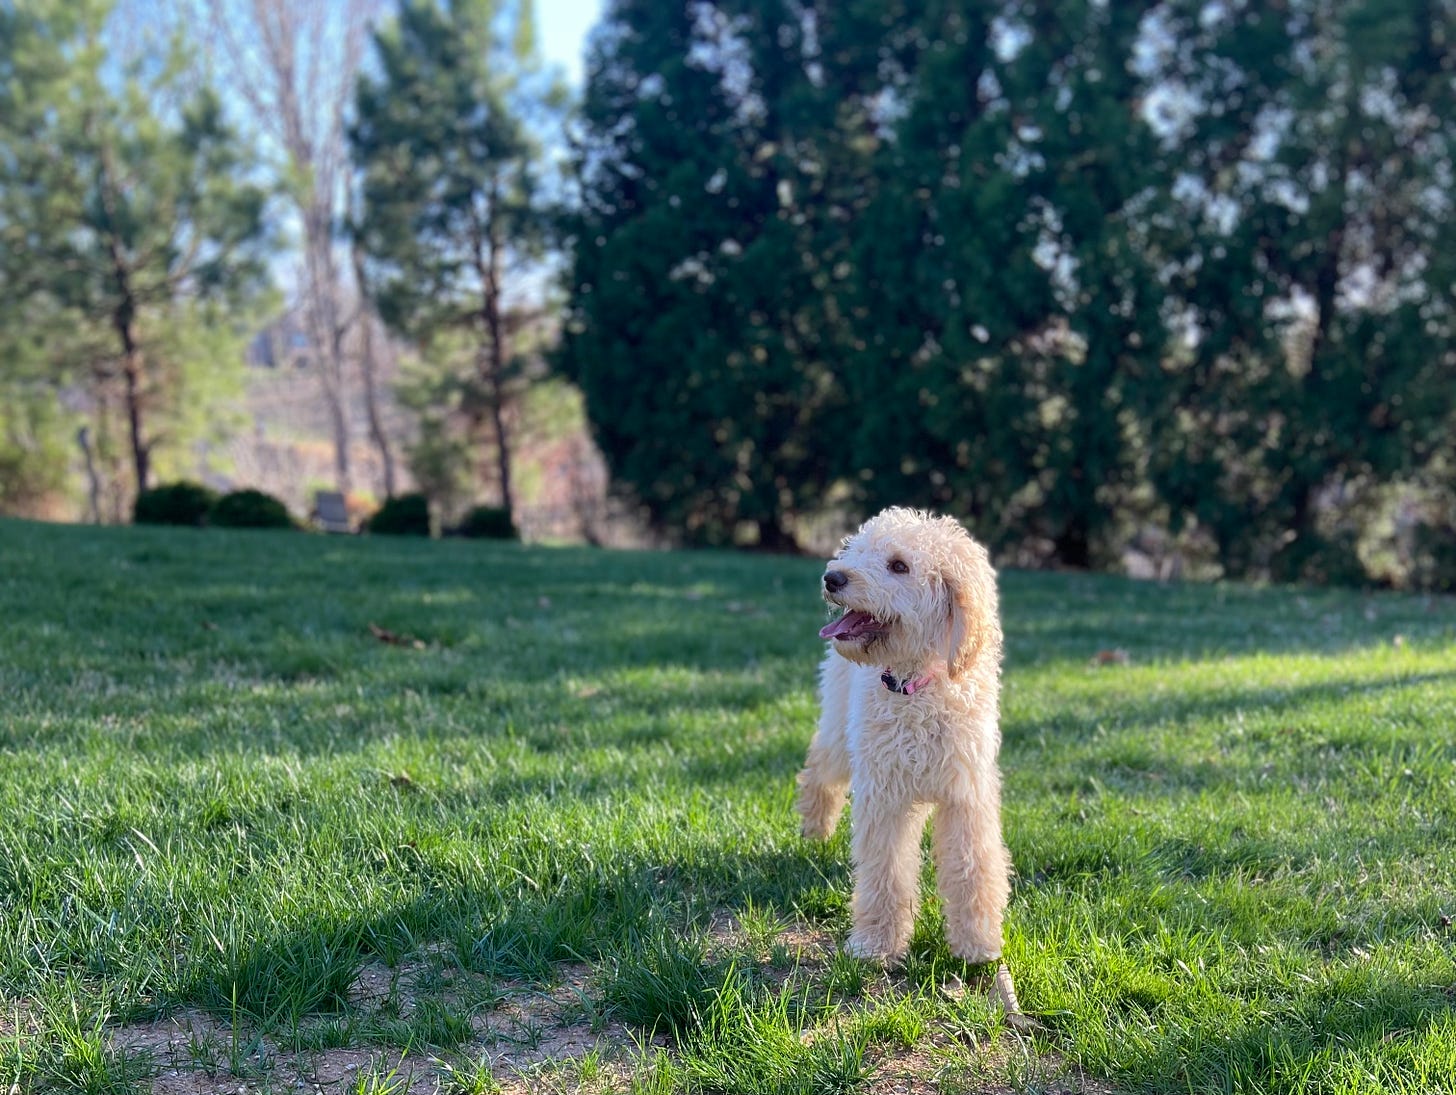 Millie, a goldendoodle